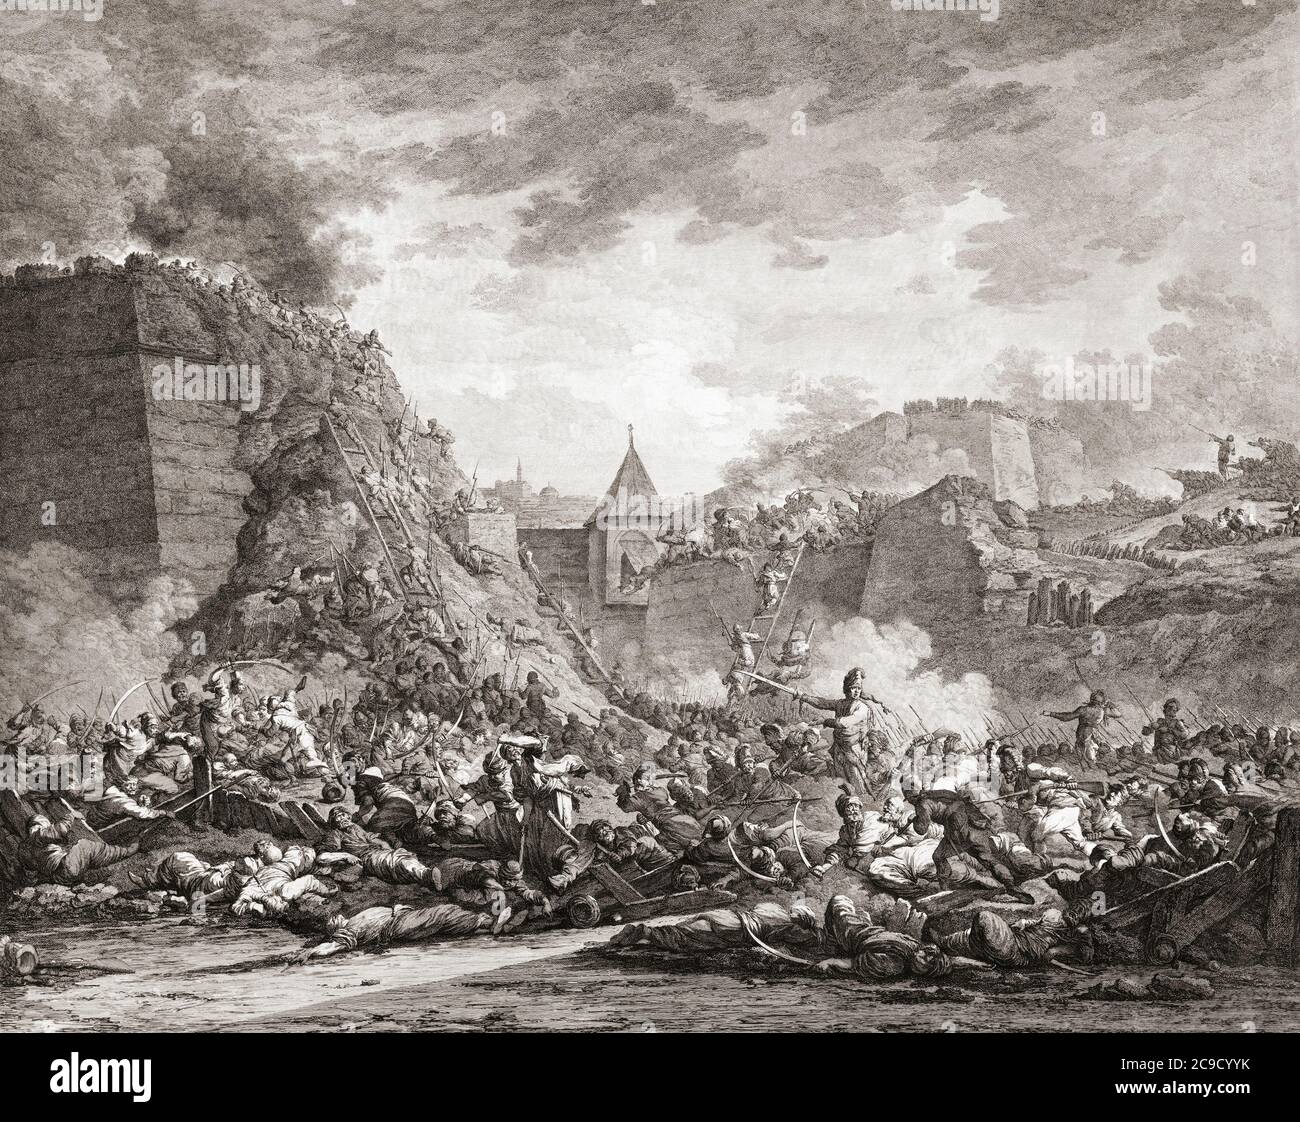 Russische Truppen stürmten die Festung Otschakow (heute Otschakow, Ukraine) unter der Führung von Fürst Grigori Potemkin und Alexander Suworow während der zweiten Belagerung Otschakow, 1788, im russisch-türkischen Krieg von 1787 - 1792. Stockfoto